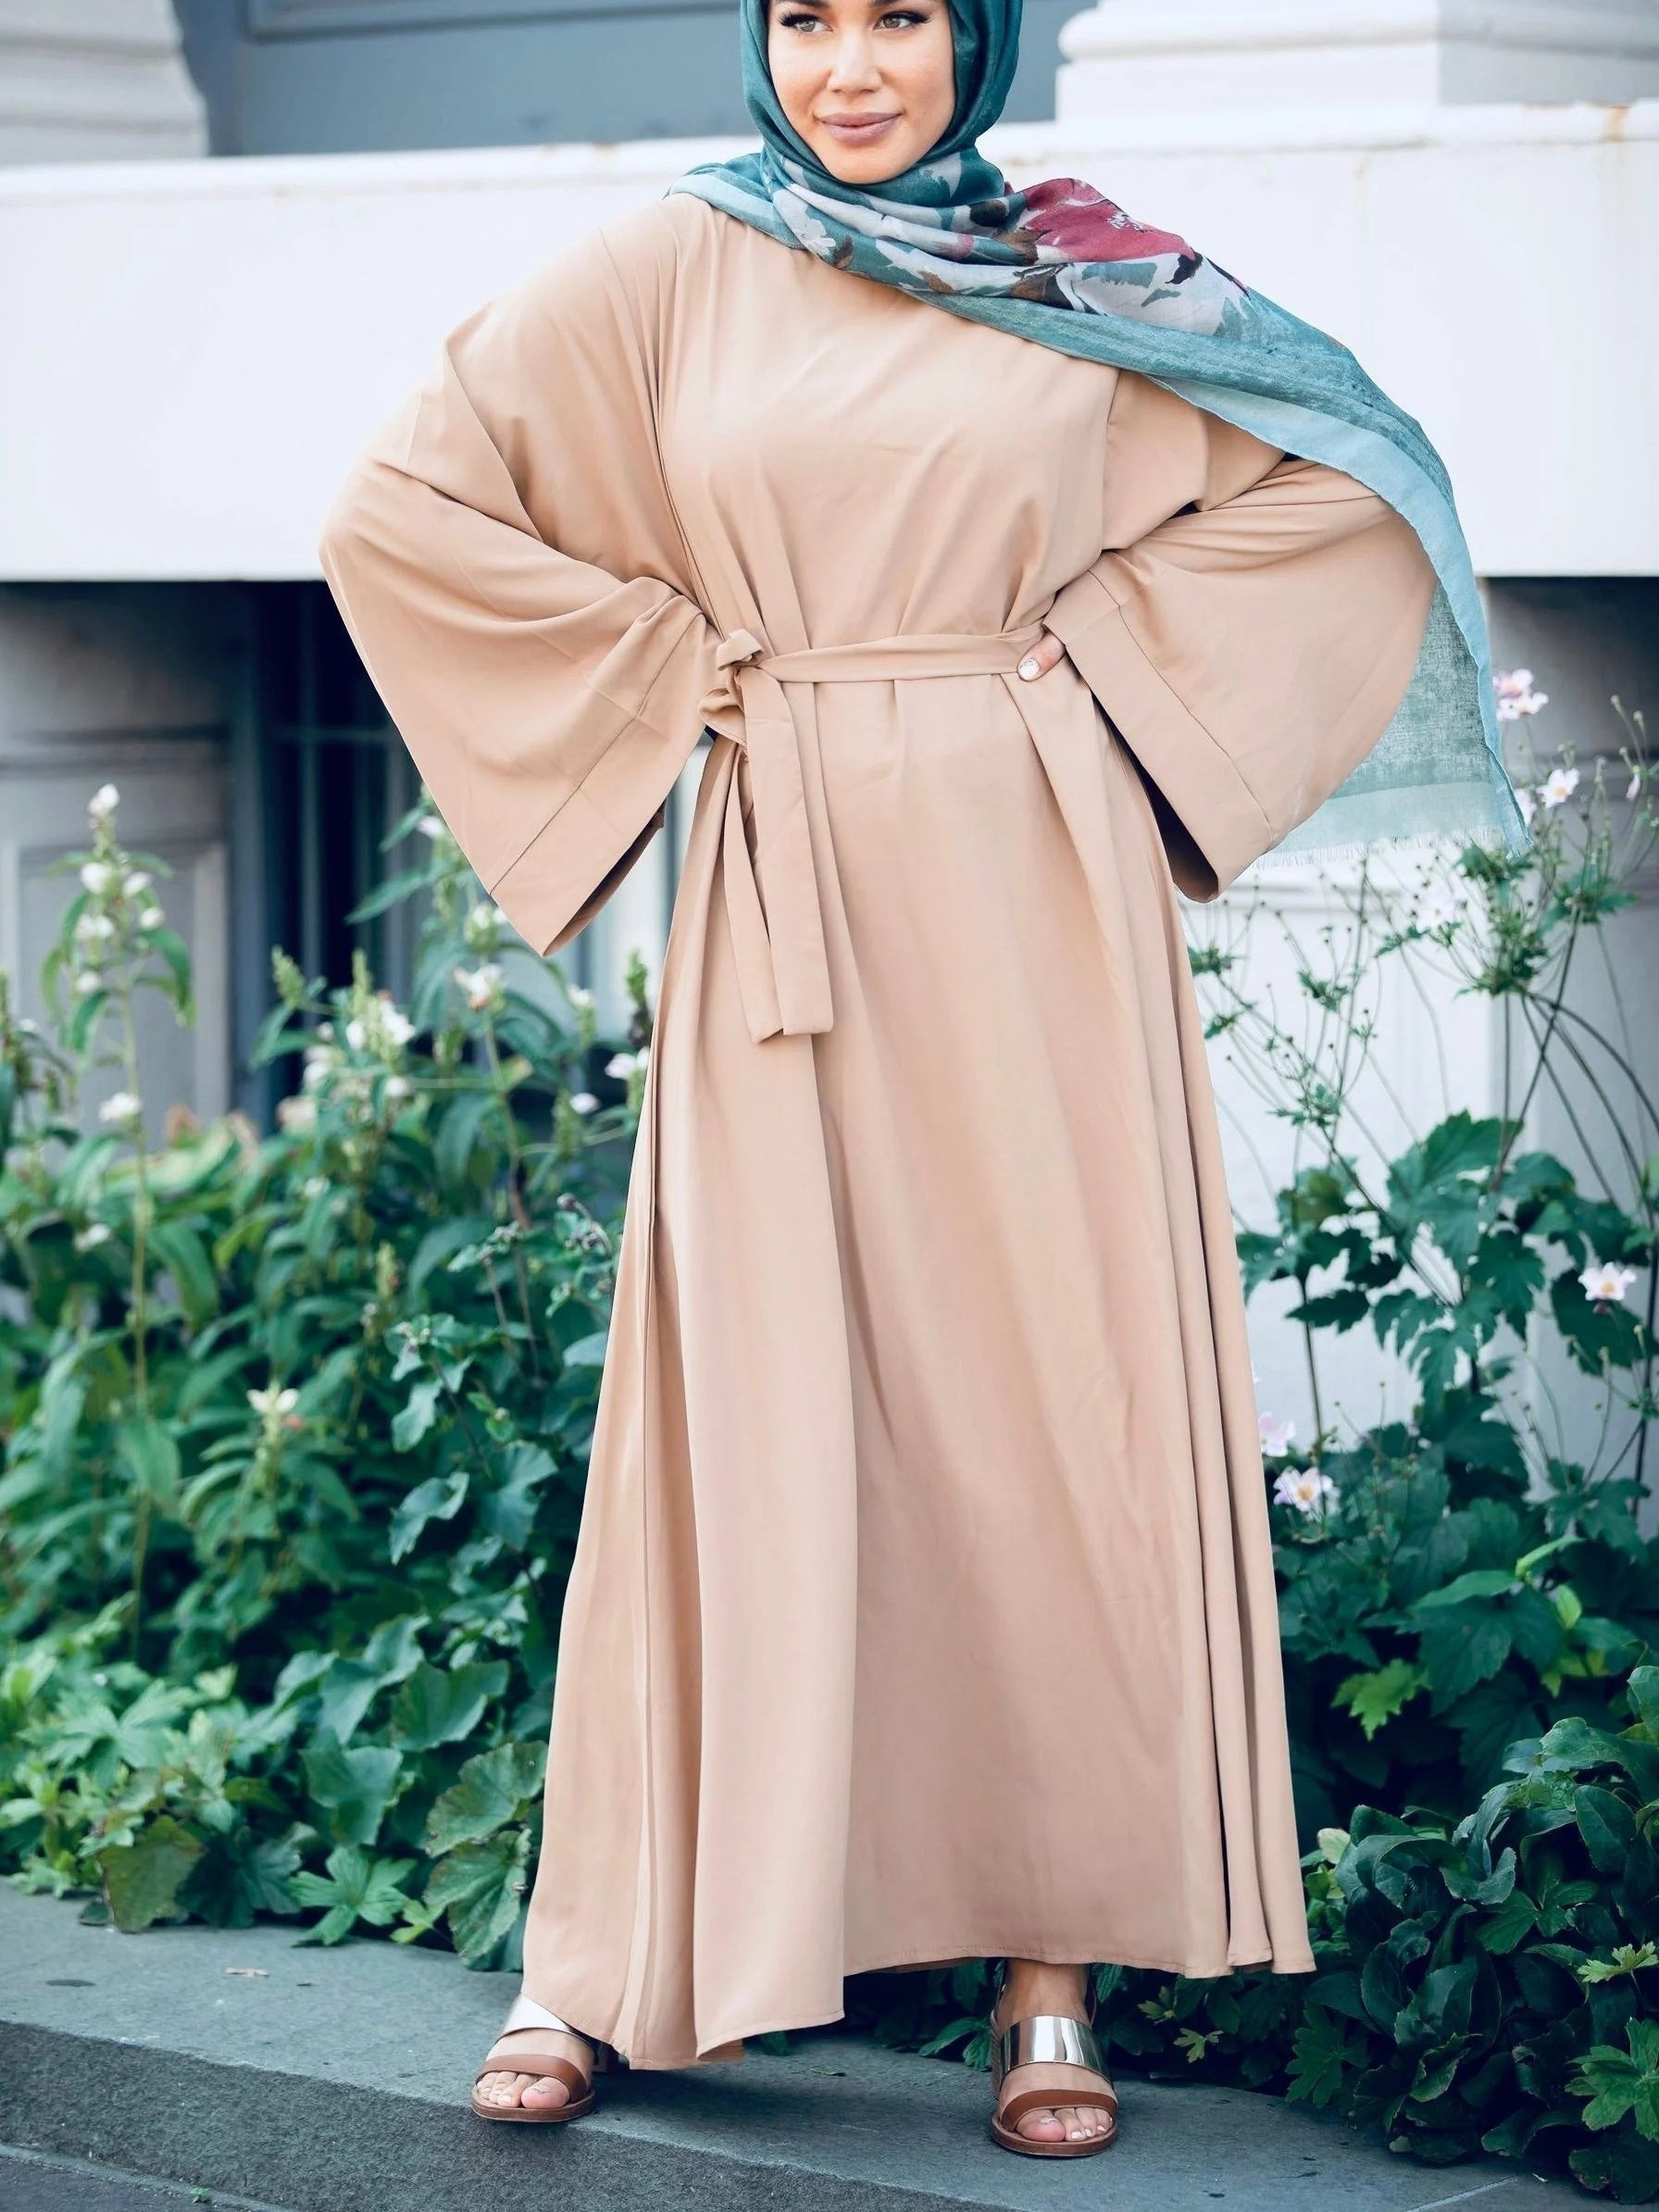 2020 Nuevo diseño de ropa Islámica vestimenta musulmana Caftans larga bata  de desgaste de los musulmanes de vestimenta islámica para la mujer vestido  modesto en el Islam, el hijab Abaya fábrica de